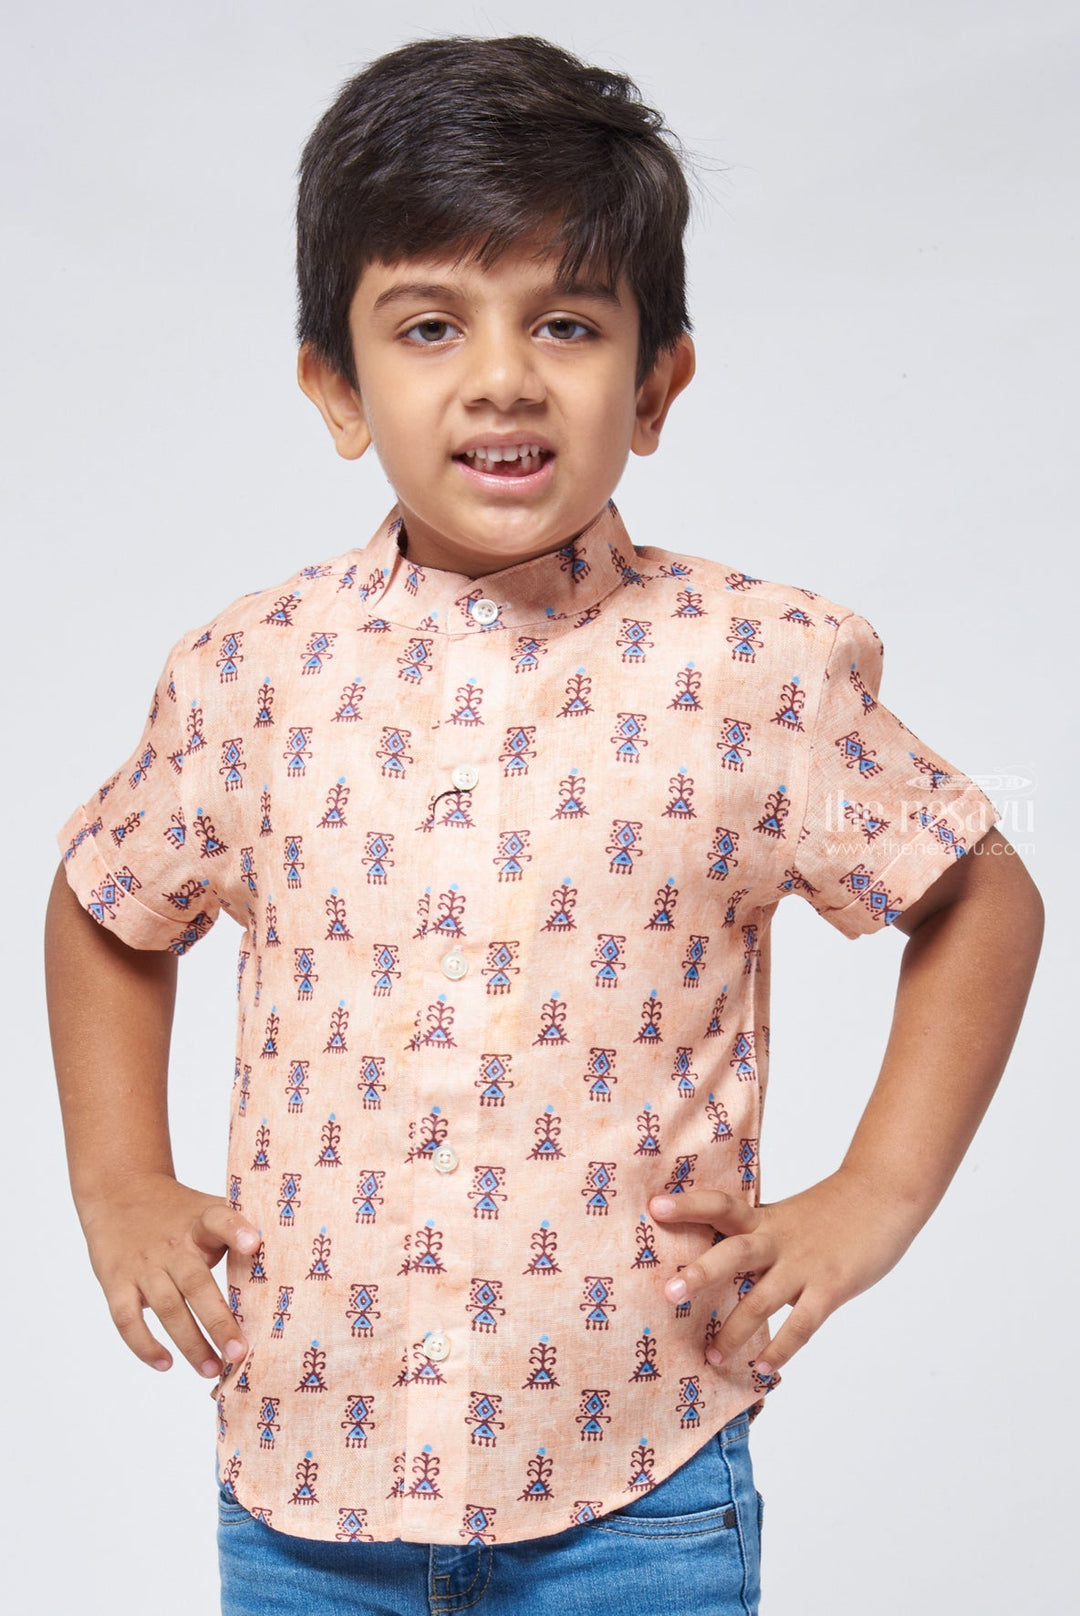 The Nesavu Boys Linen Shirt Classic Comfort Boys Premium Quality Shirt for Every Occasion Nesavu Boys Casual Shirt Online | Buy Premium Linen Shirt | The Nesavu